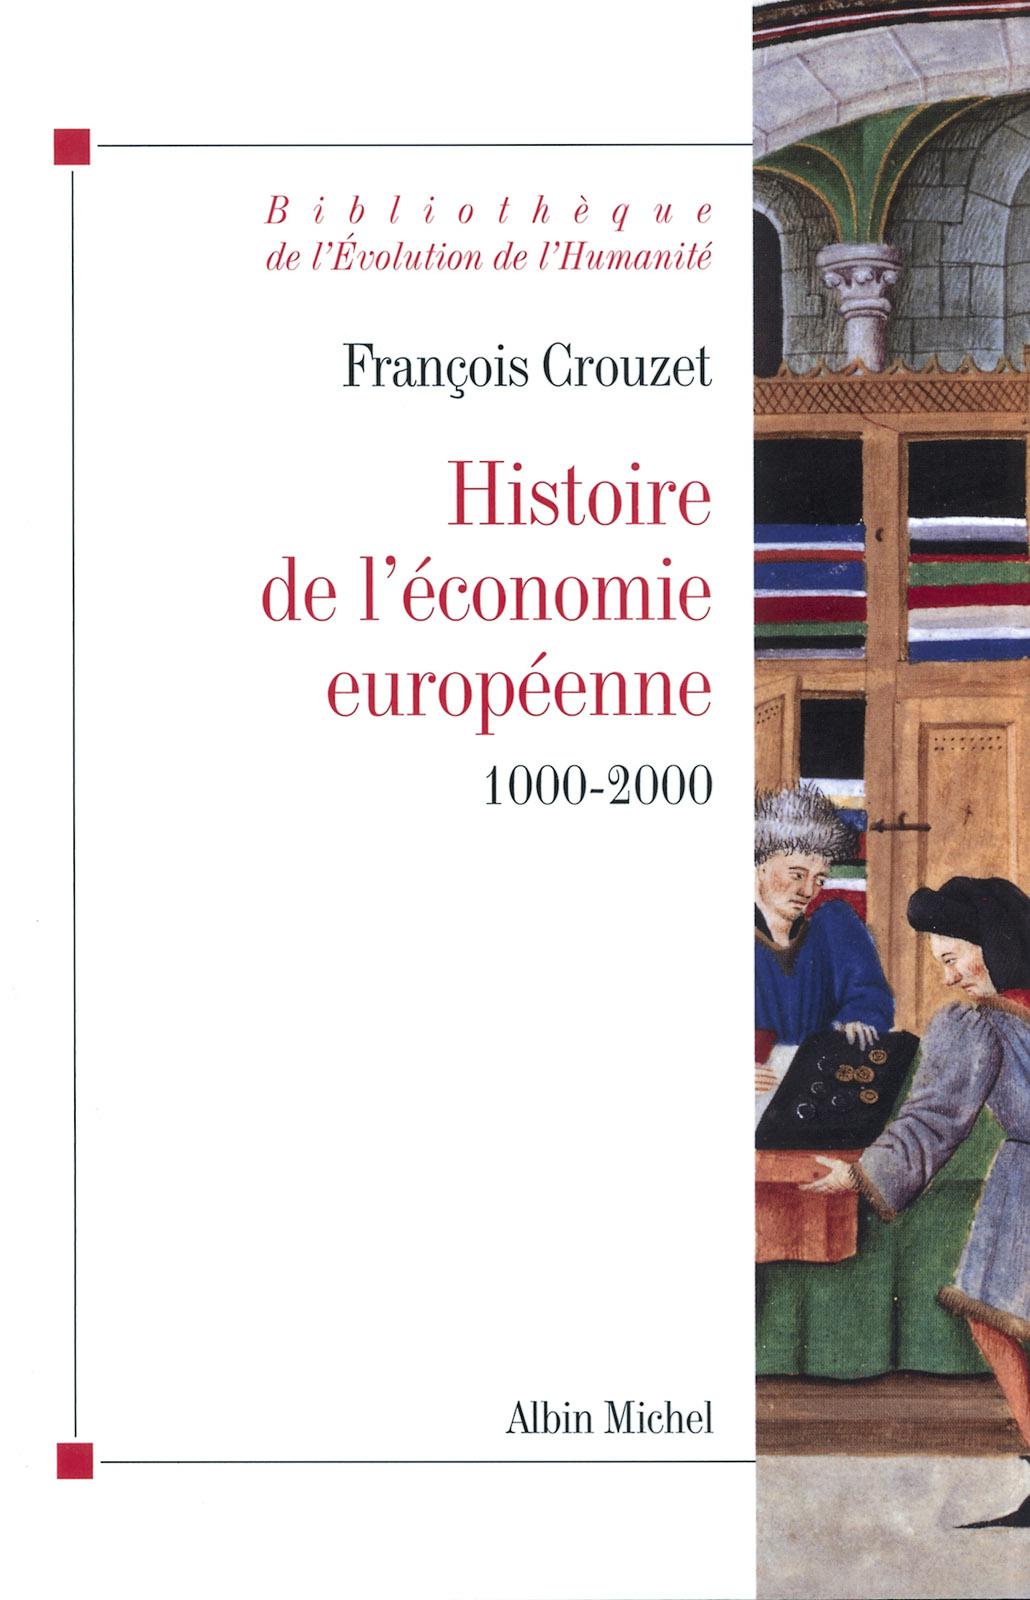 Histoire de l'économie européenne 1000-2000. François Crouzet